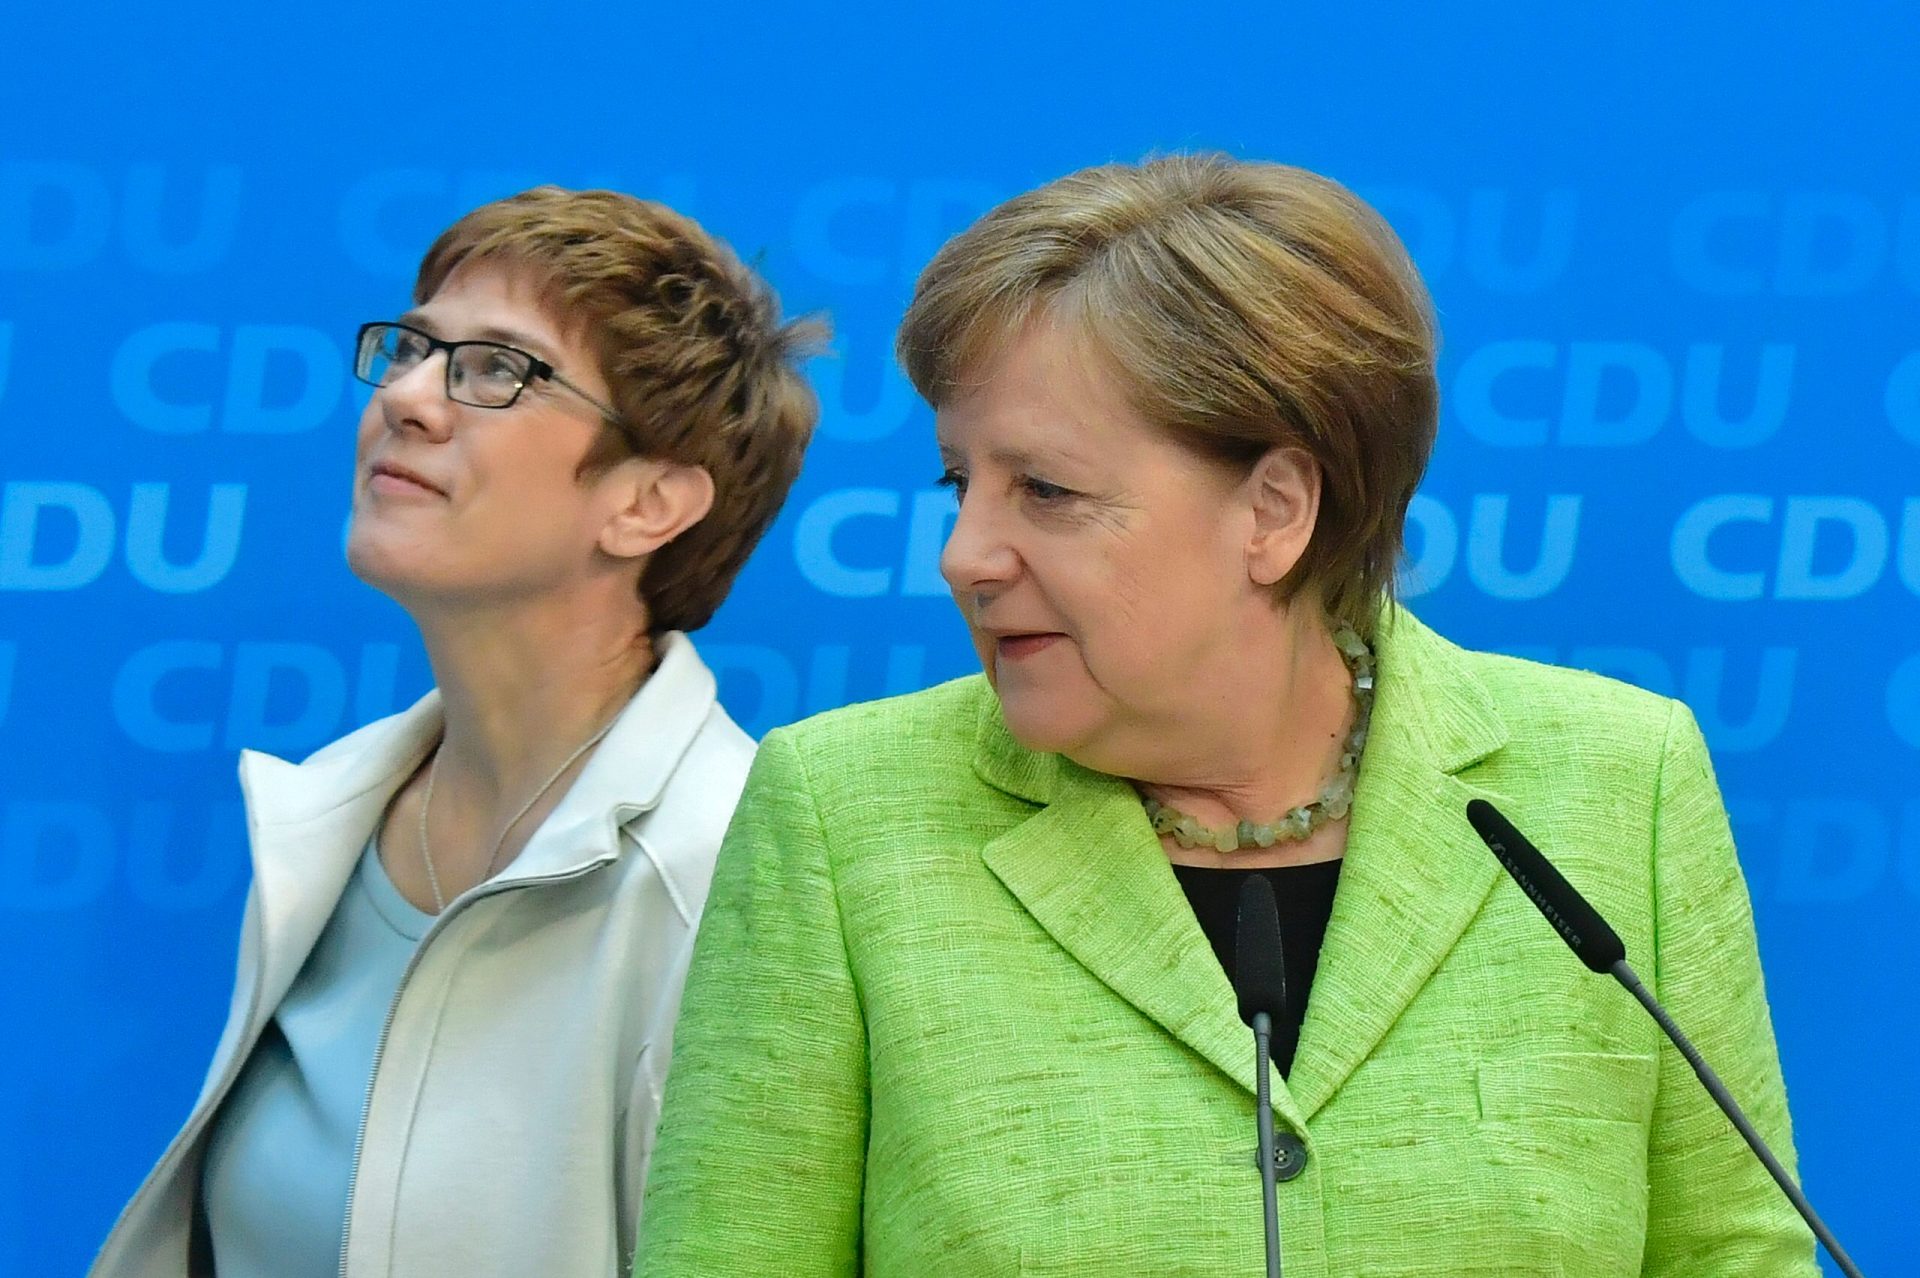 Alemanha. Merkel saiu aliviada do Sarre após vitória eleitoral indiscutível